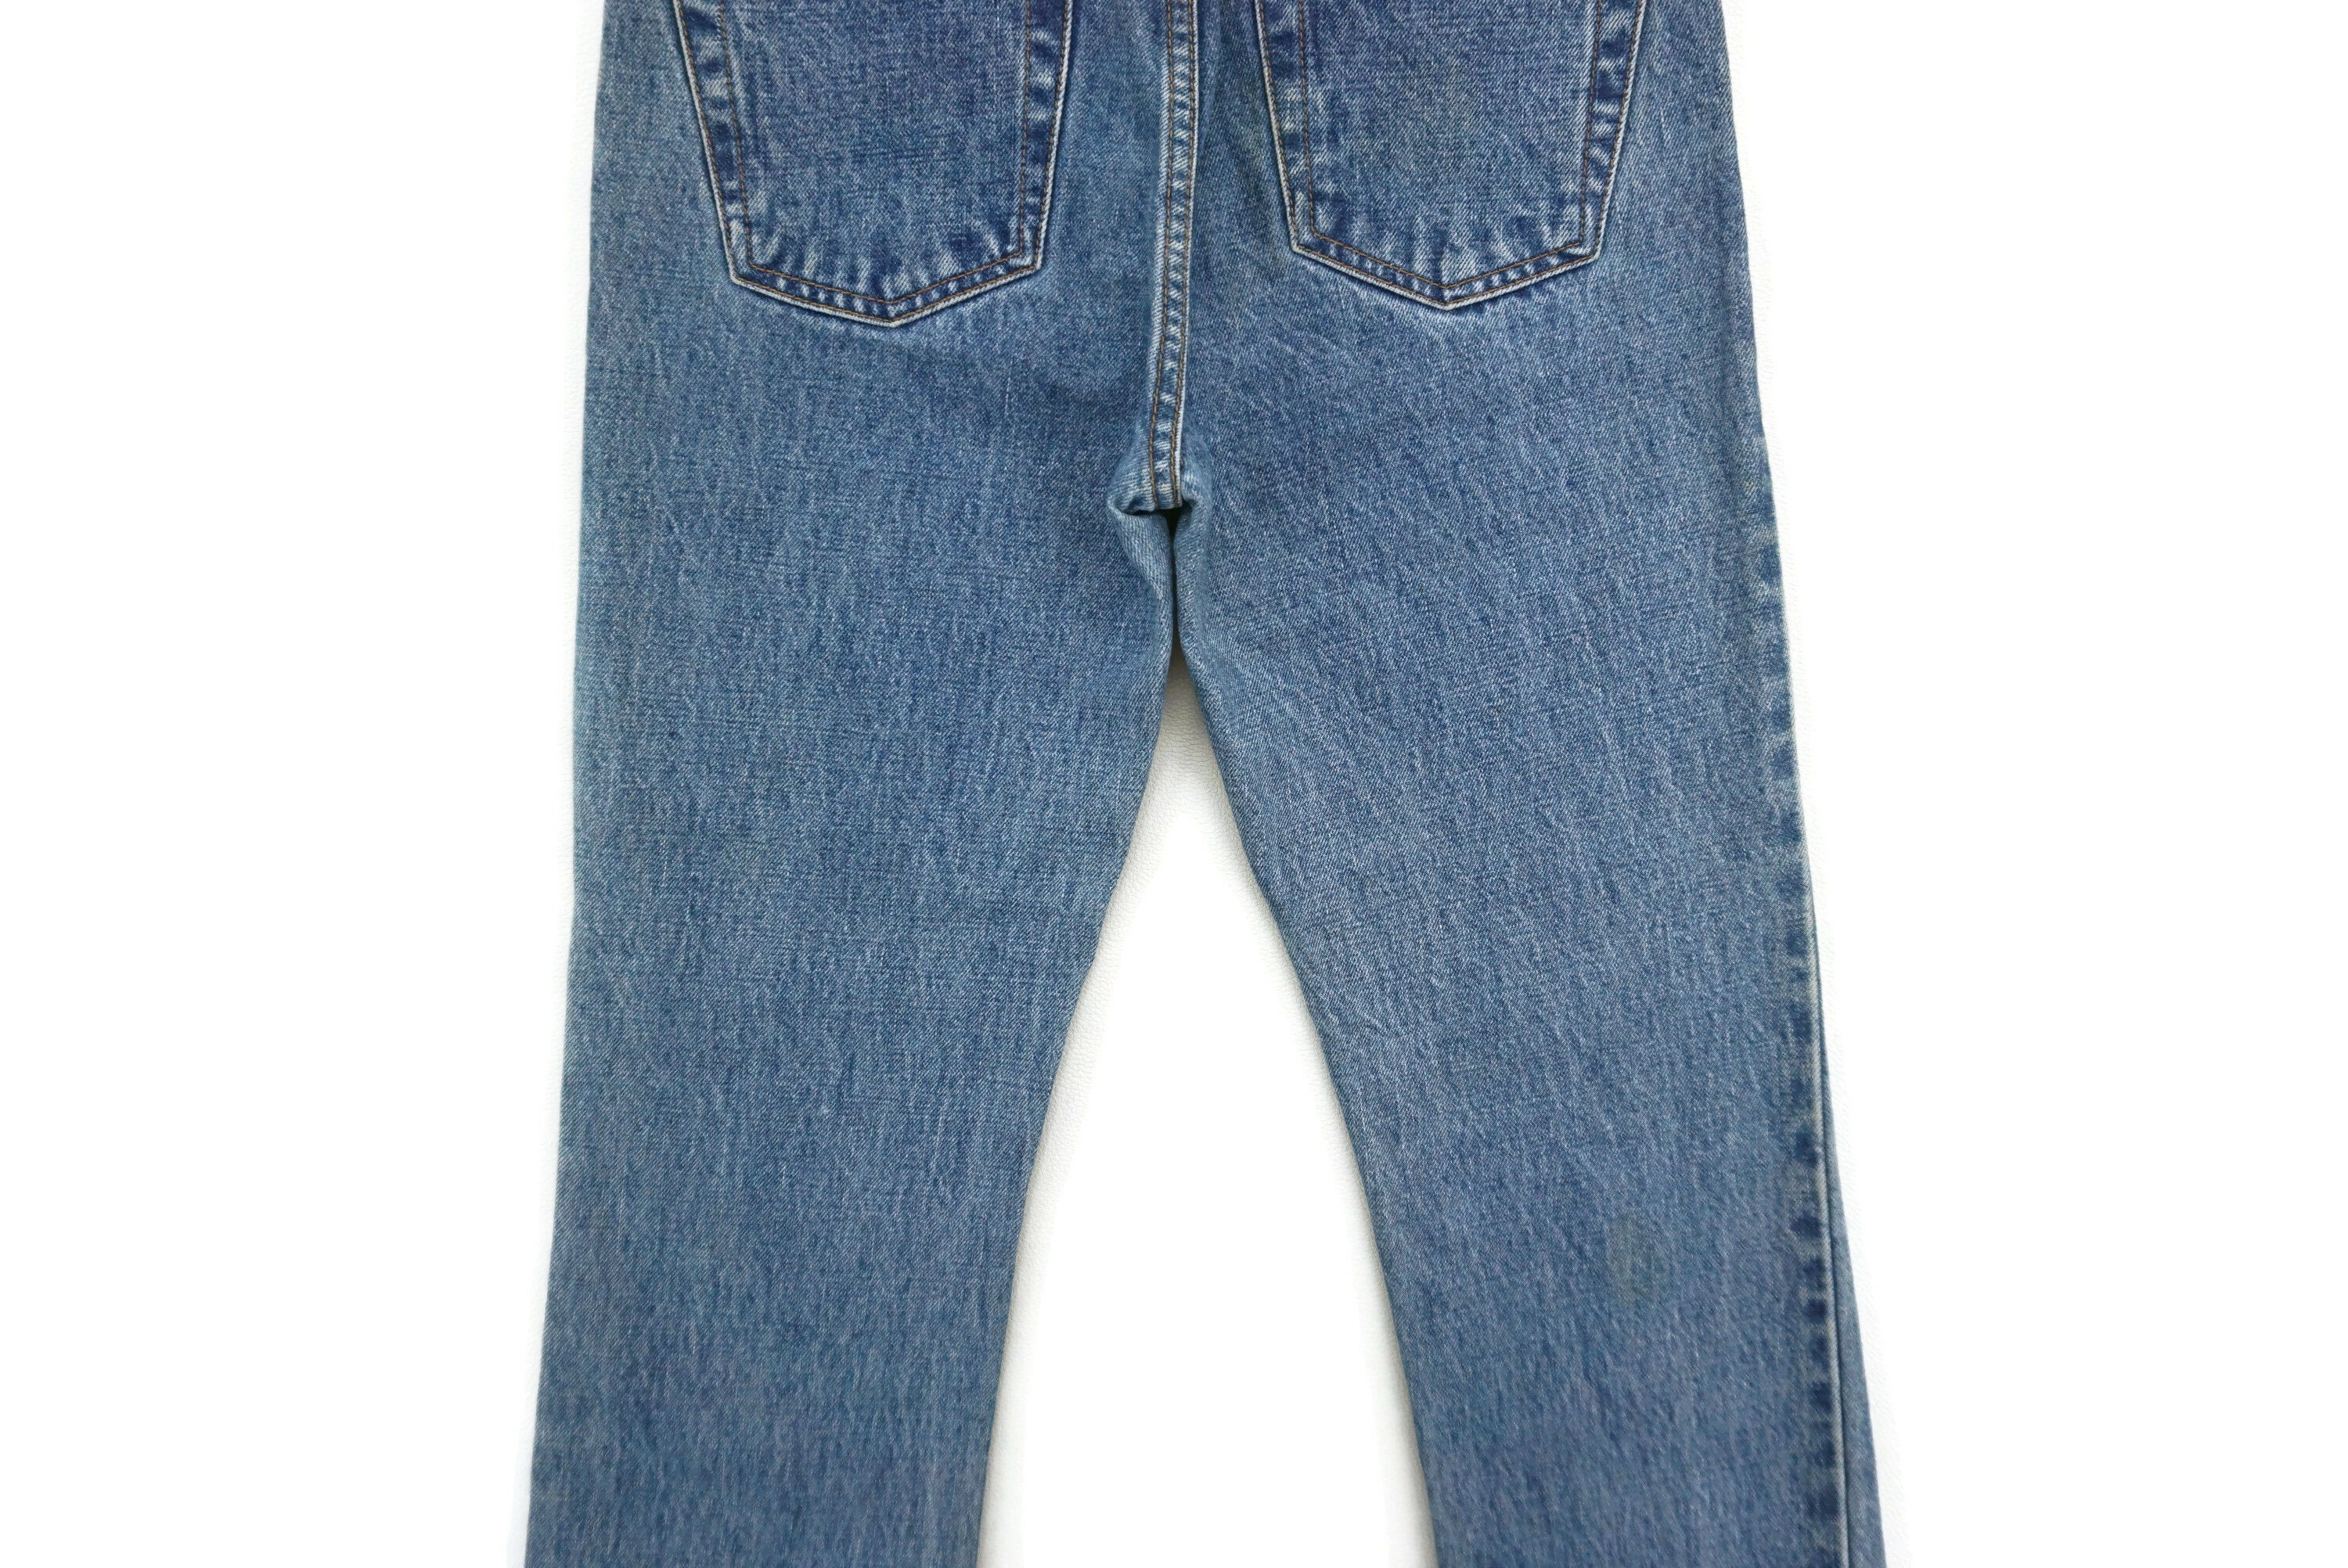 Gap Jeans Size 2 W27xl28 Vintage Gap Jeans Colourful Design - Etsy UK